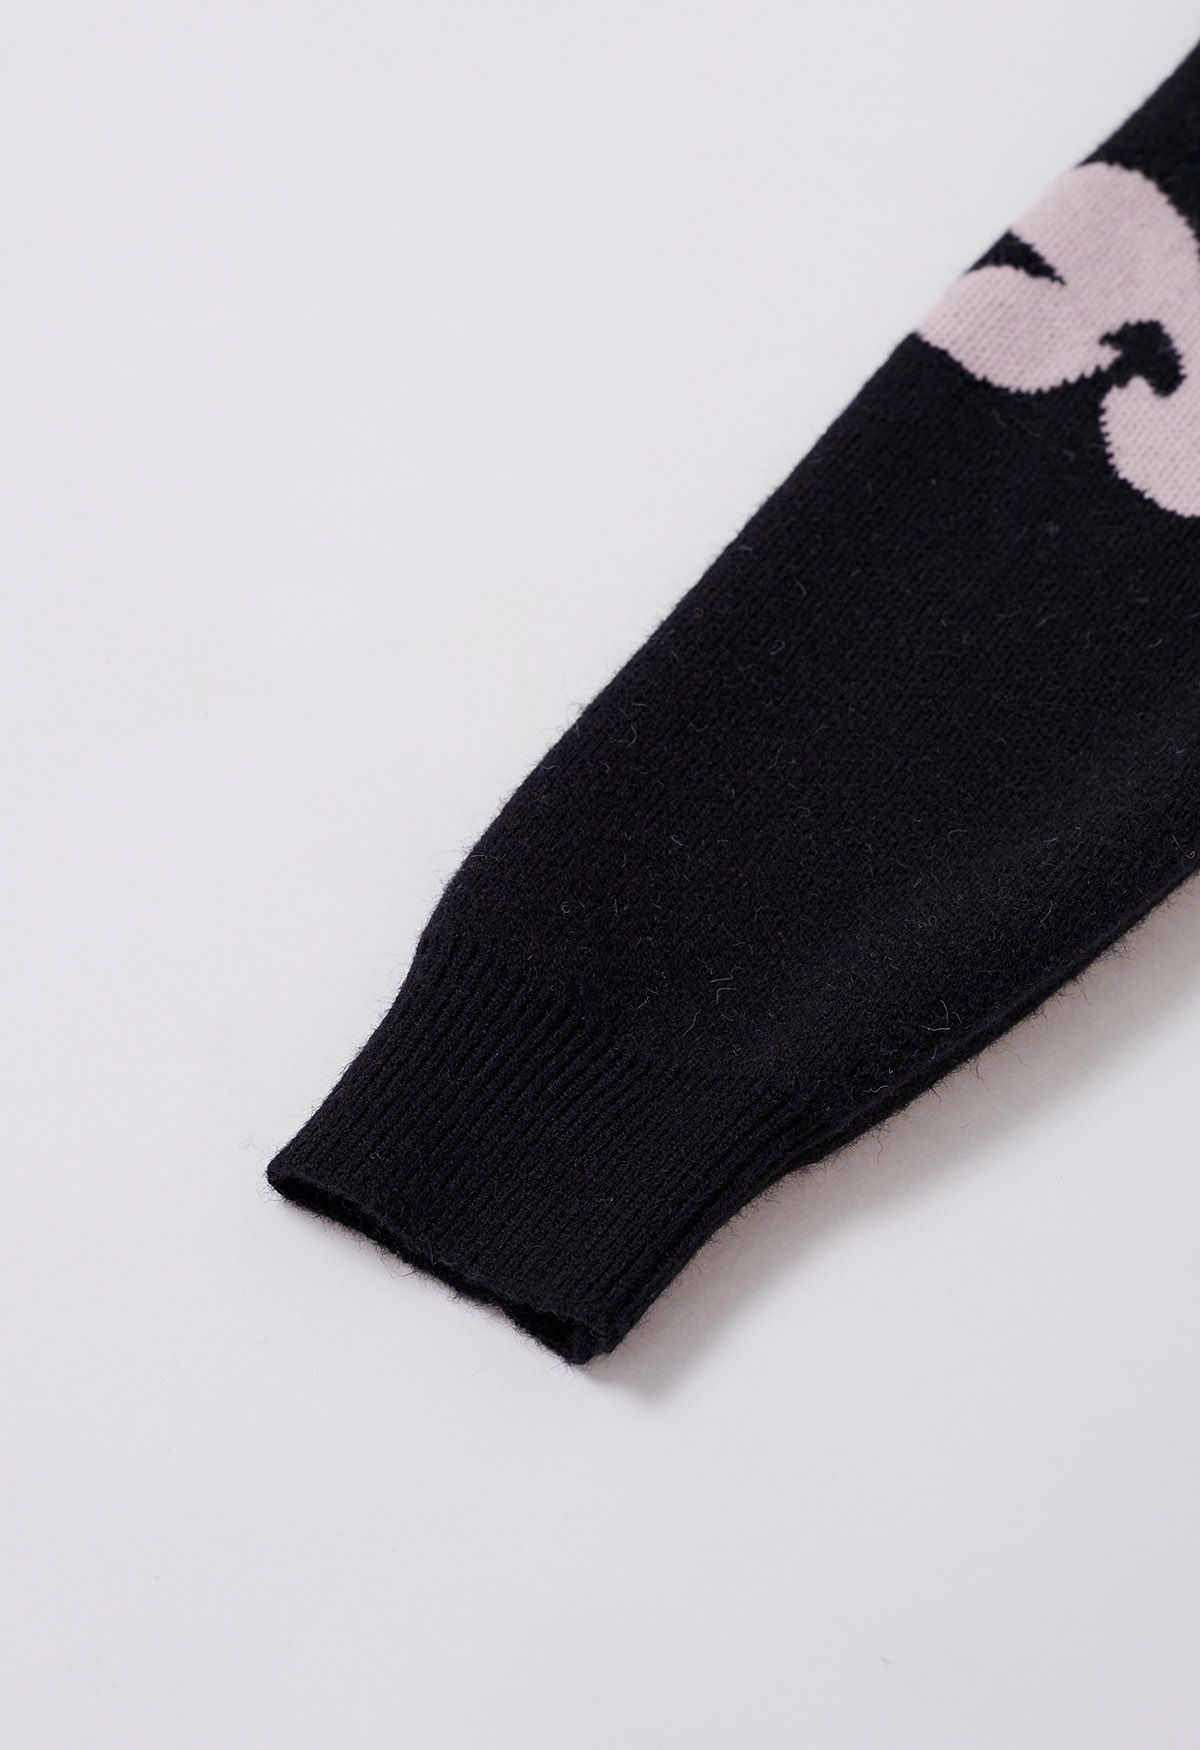 Pull en tricot à motif floral contrasté en noir